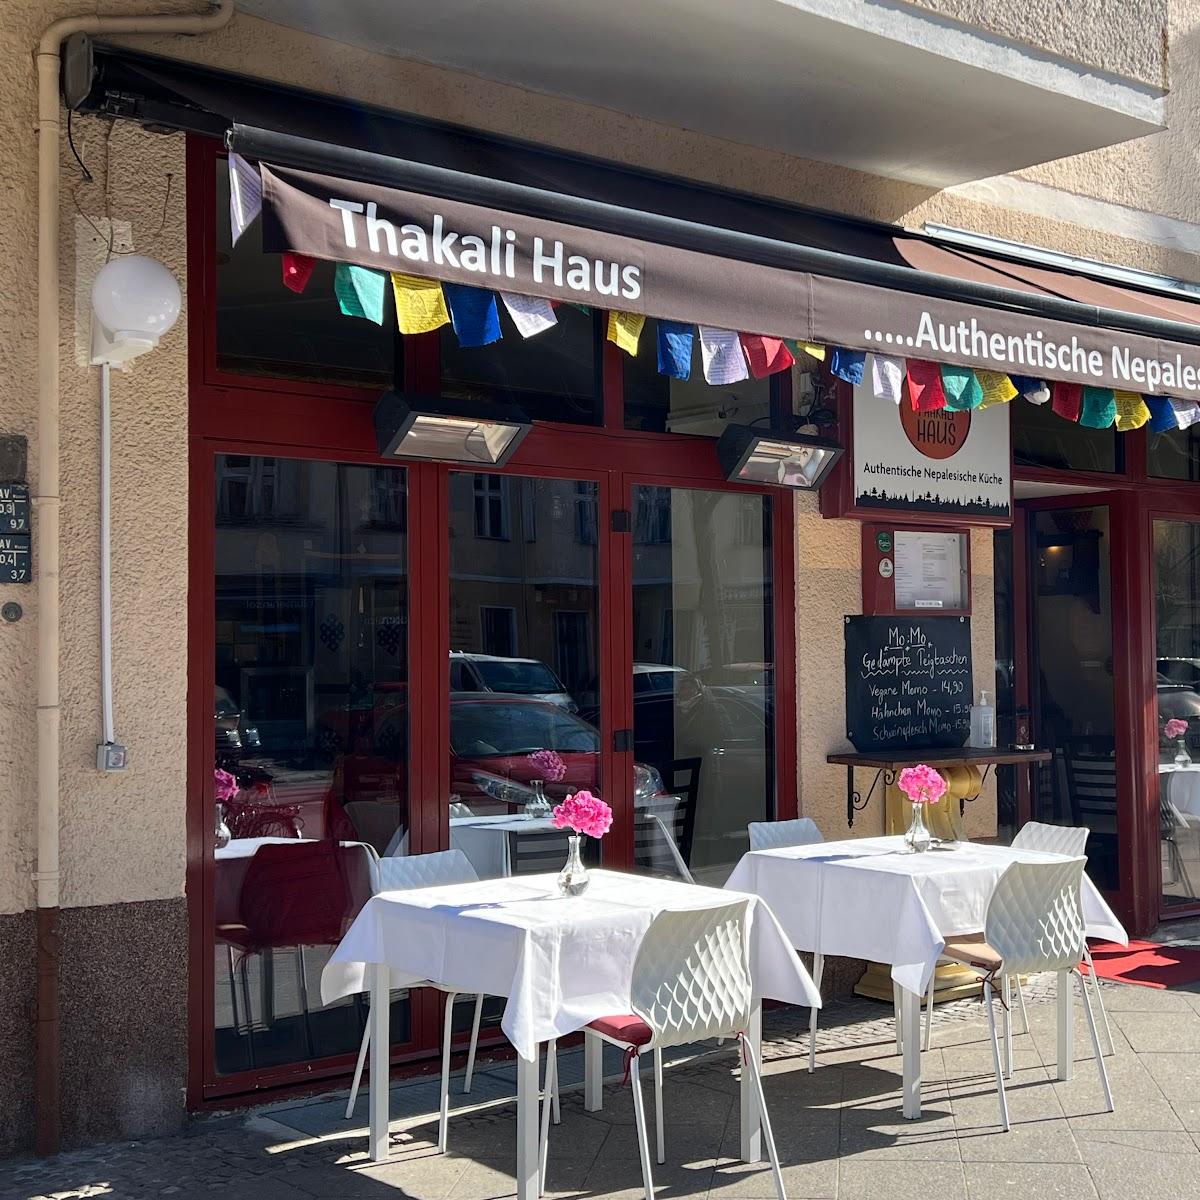 Restaurant "Thakali Haus, Nepalesische Restaurant" in Berlin